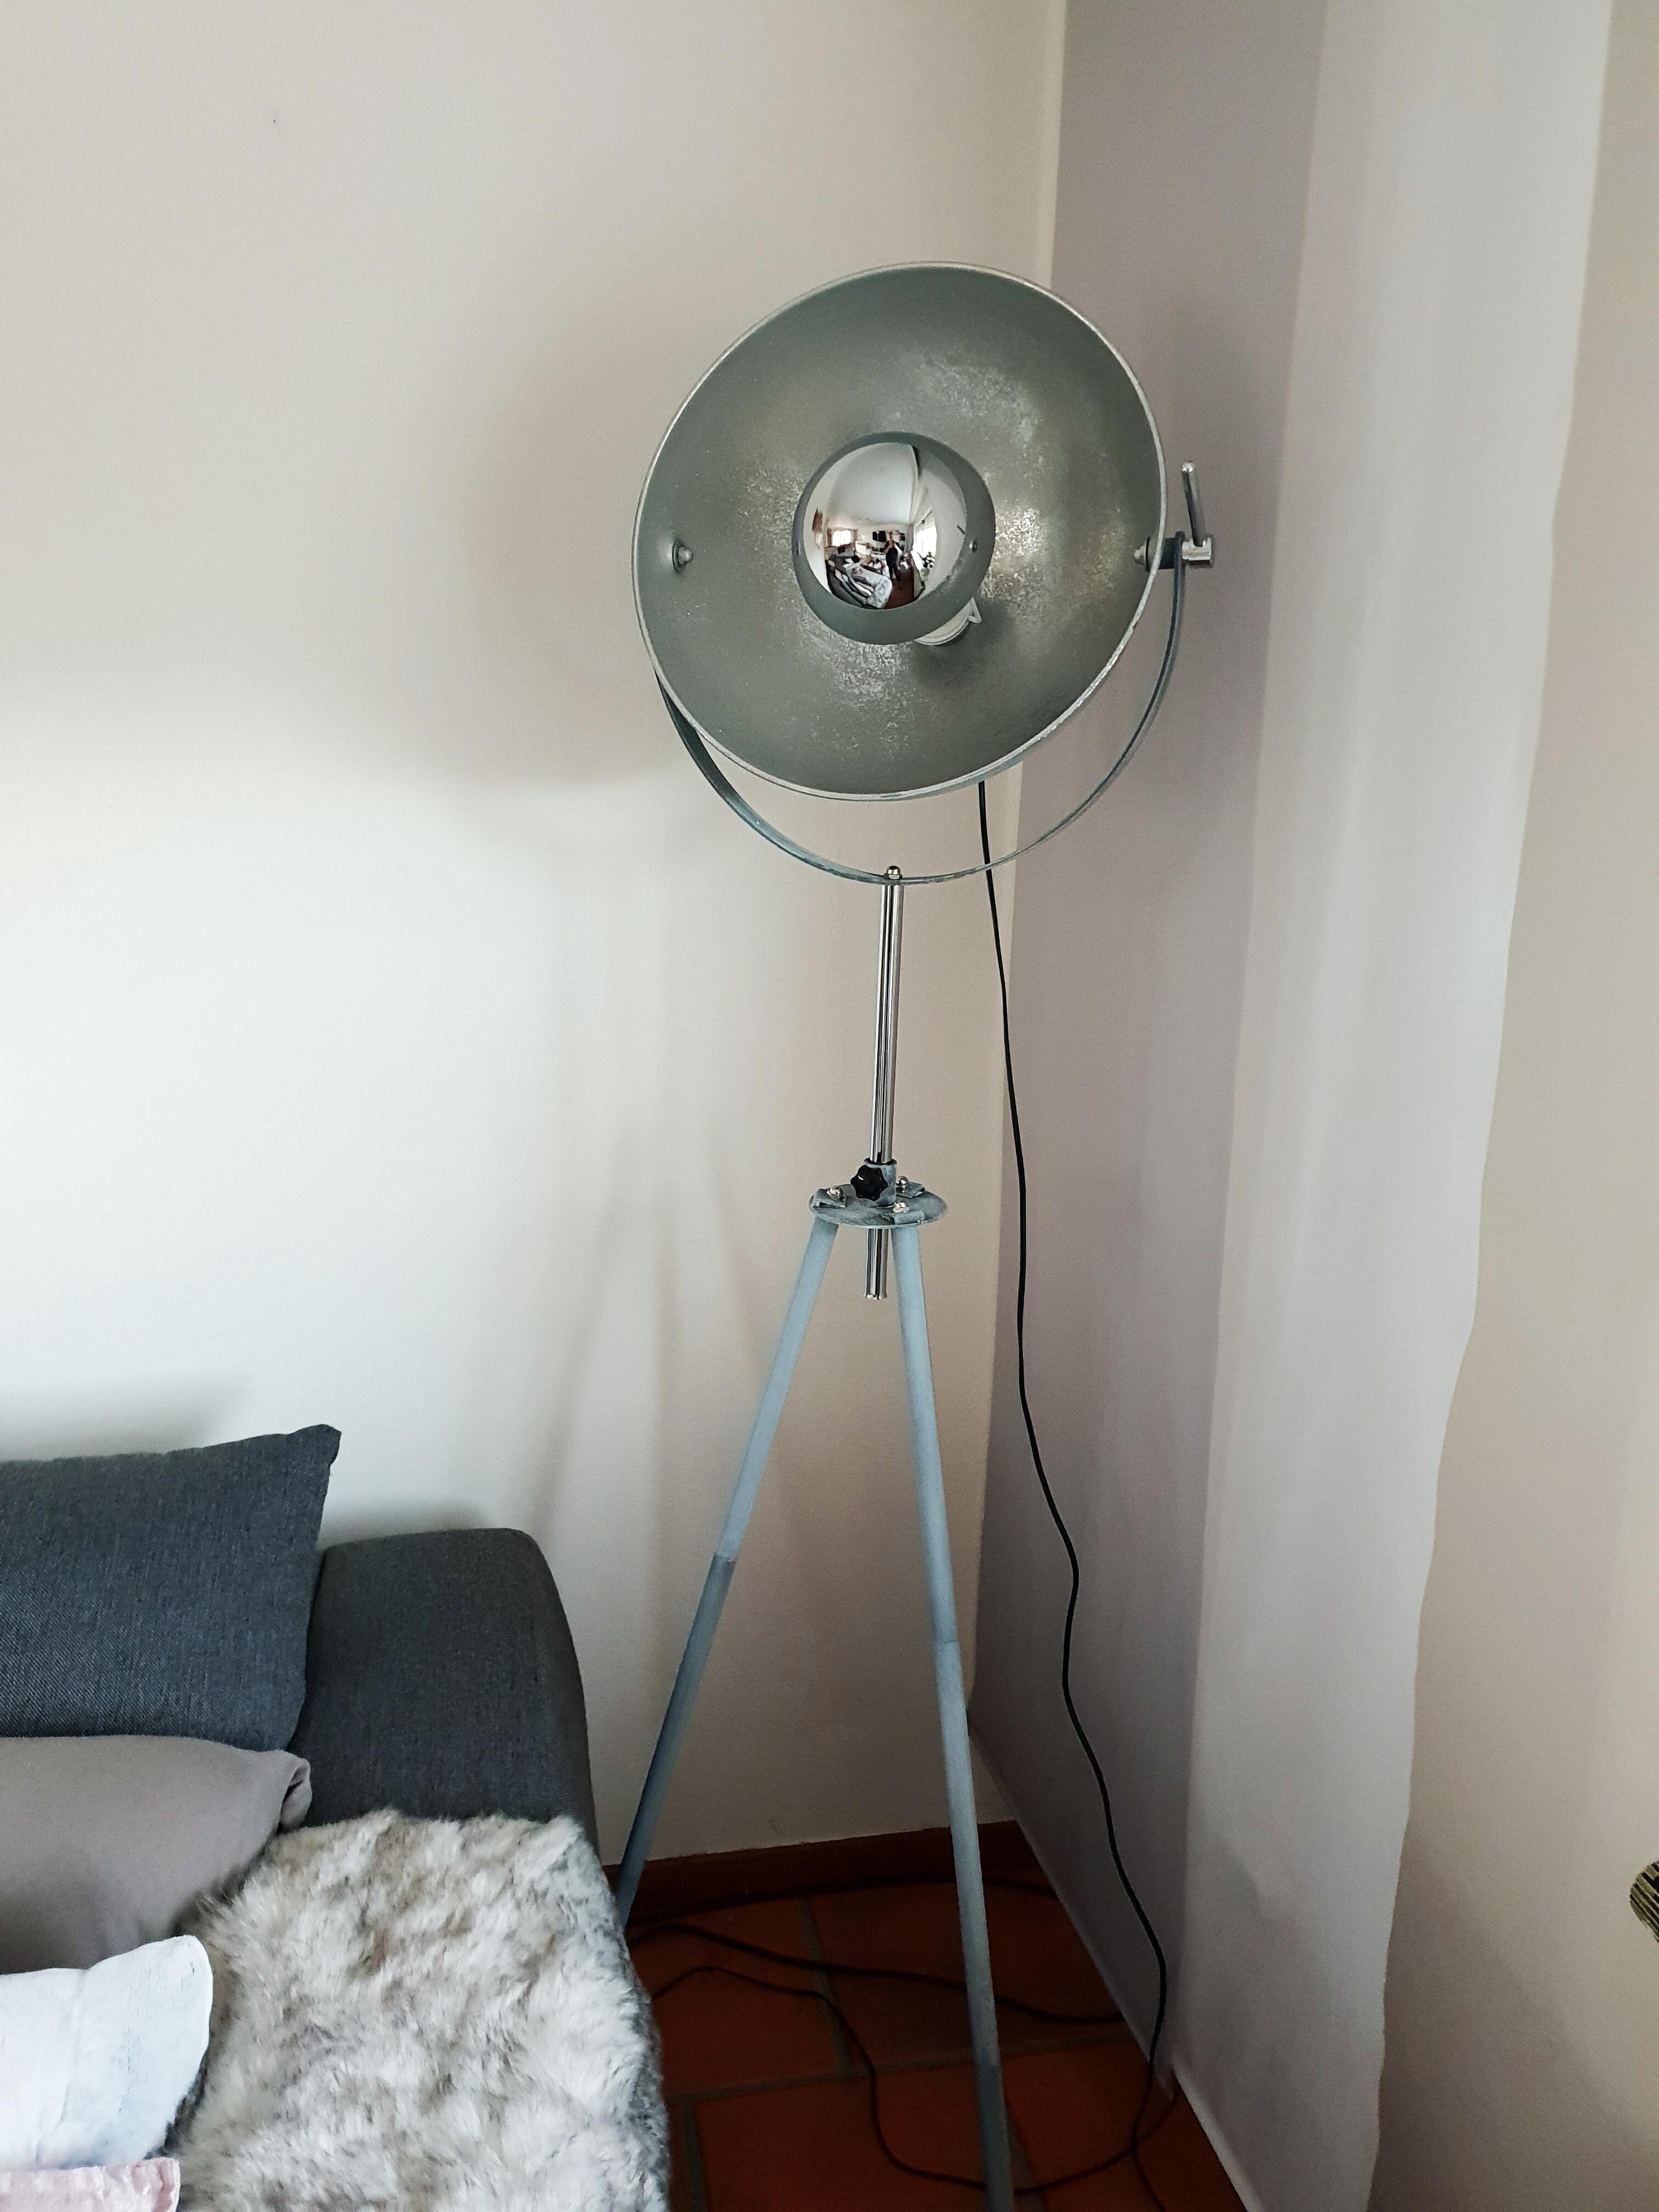 Ich mag meine neue #lampe 😊
#wohnzimmer #couch #licht #silber #grau 